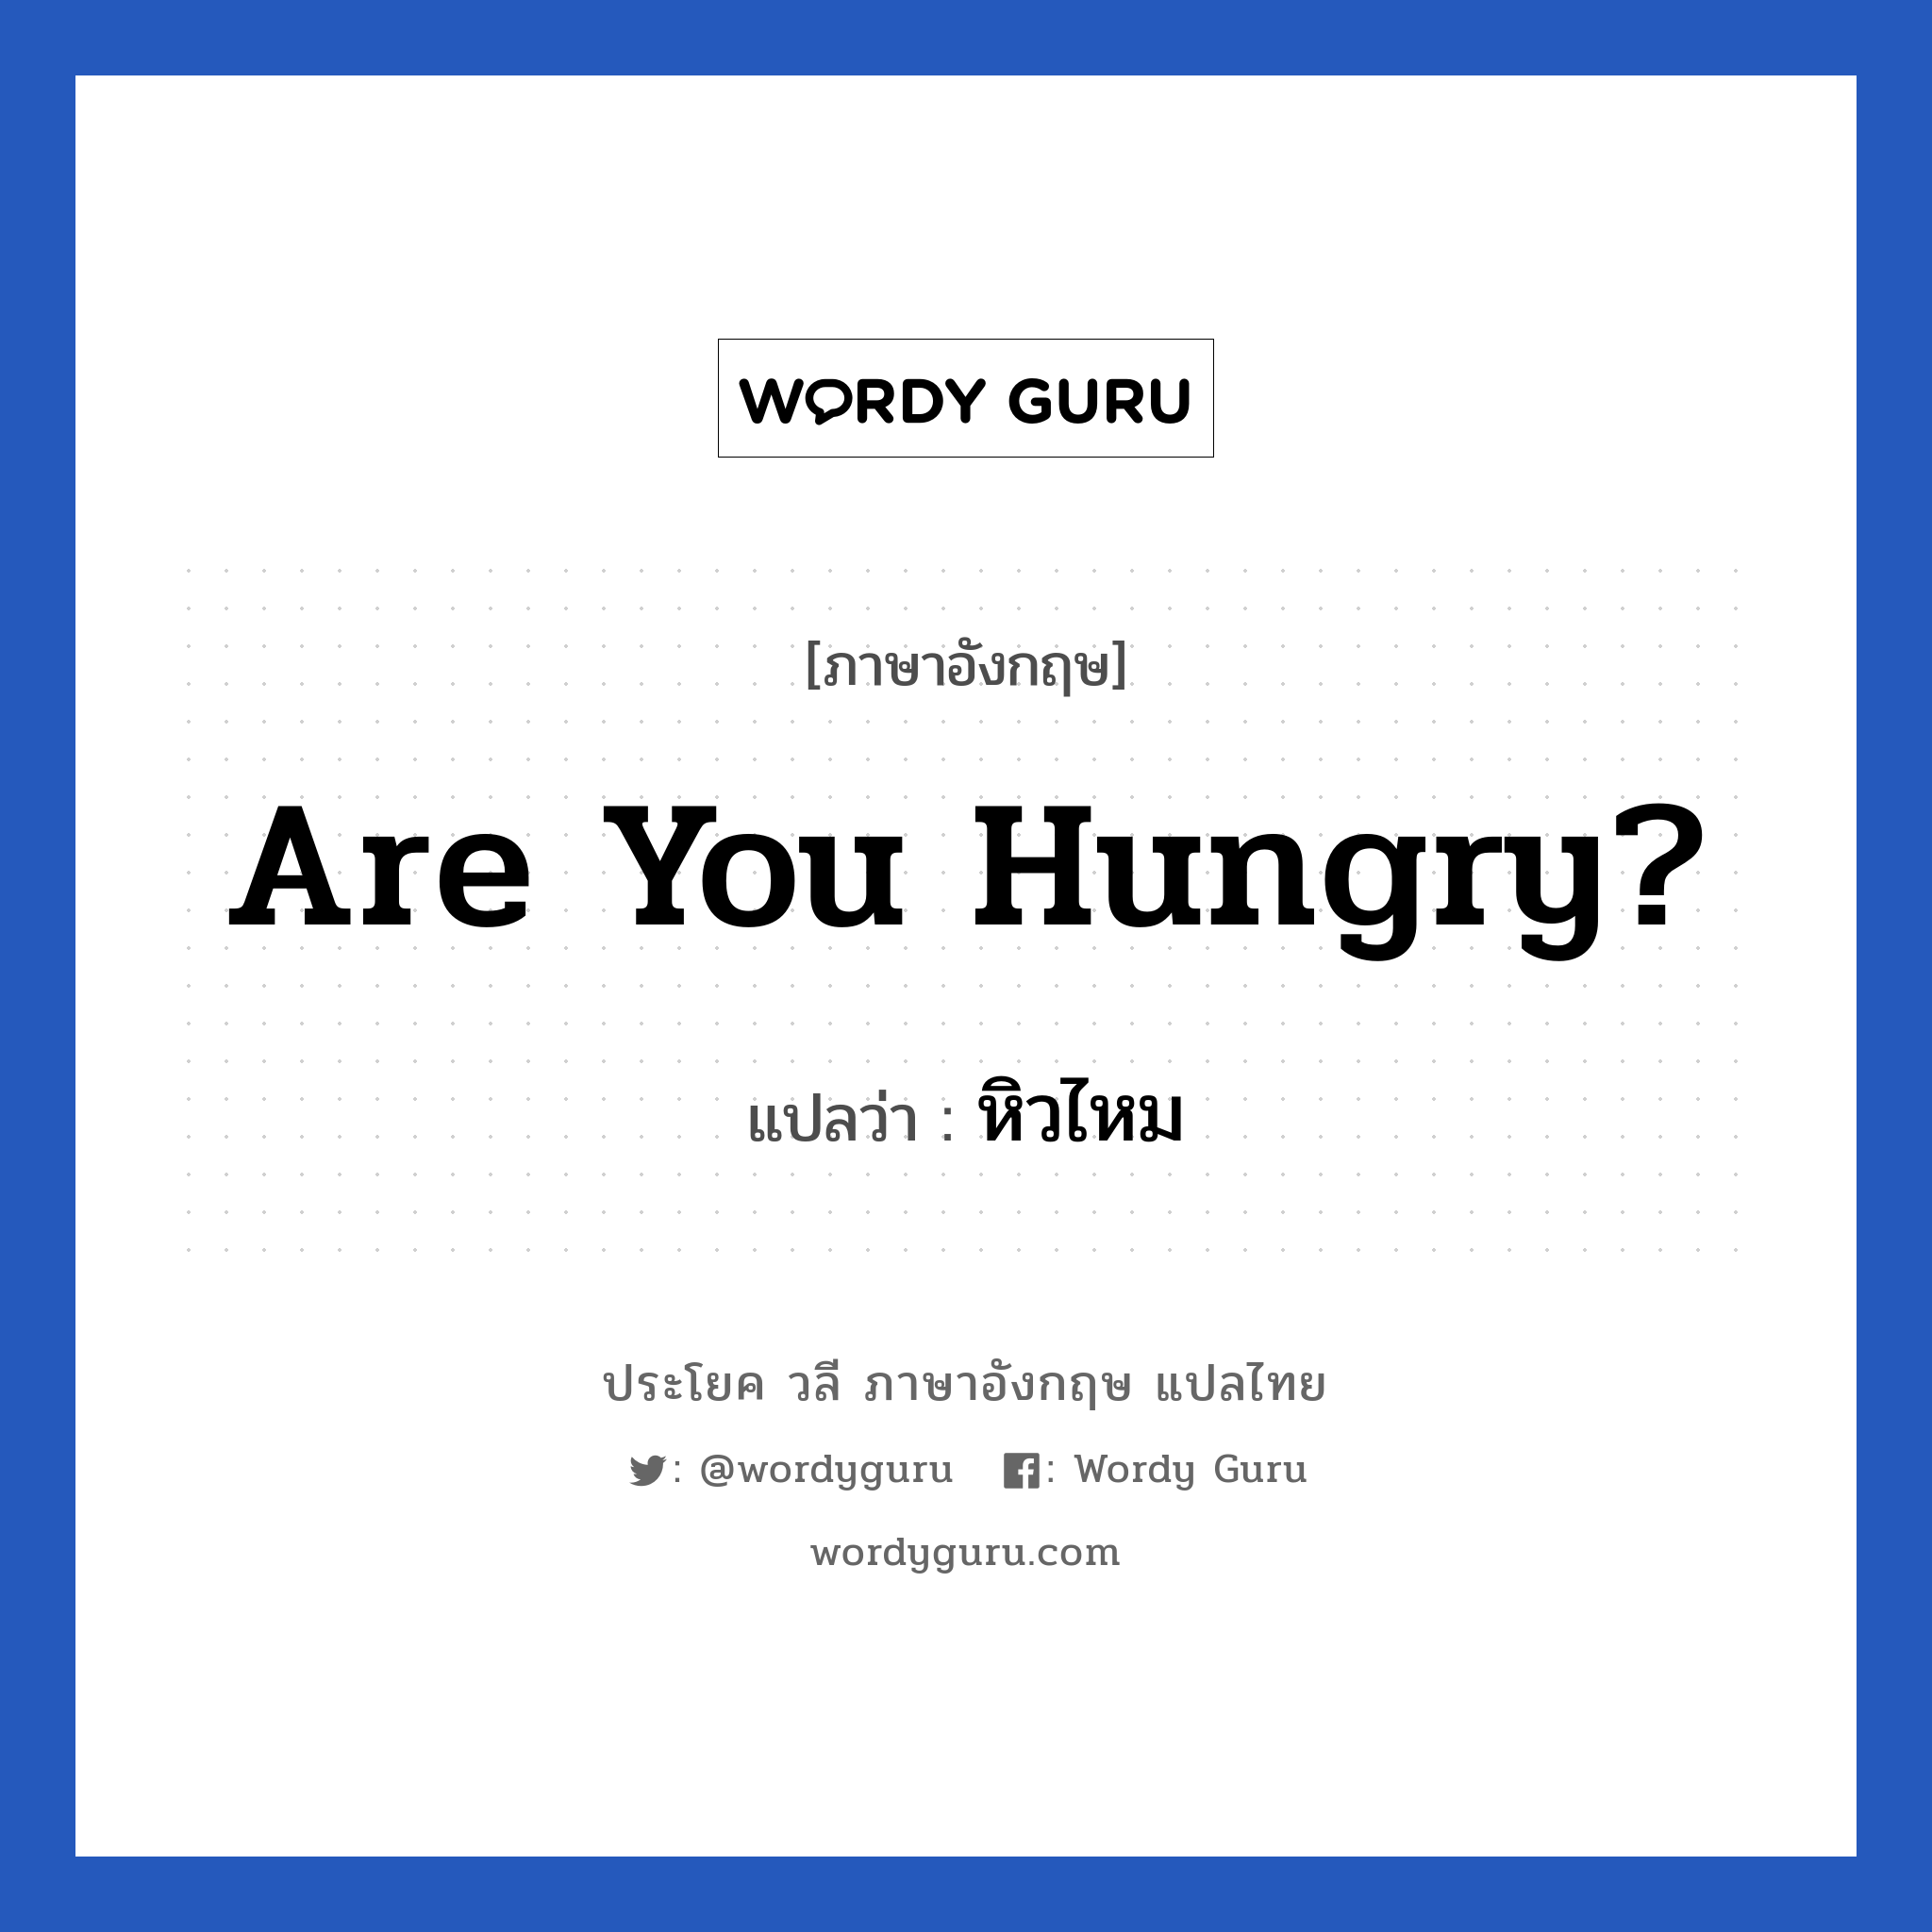 หิวไหม ภาษาอังกฤษ?, วลีภาษาอังกฤษ หิวไหม แปลว่า Are you hungry?